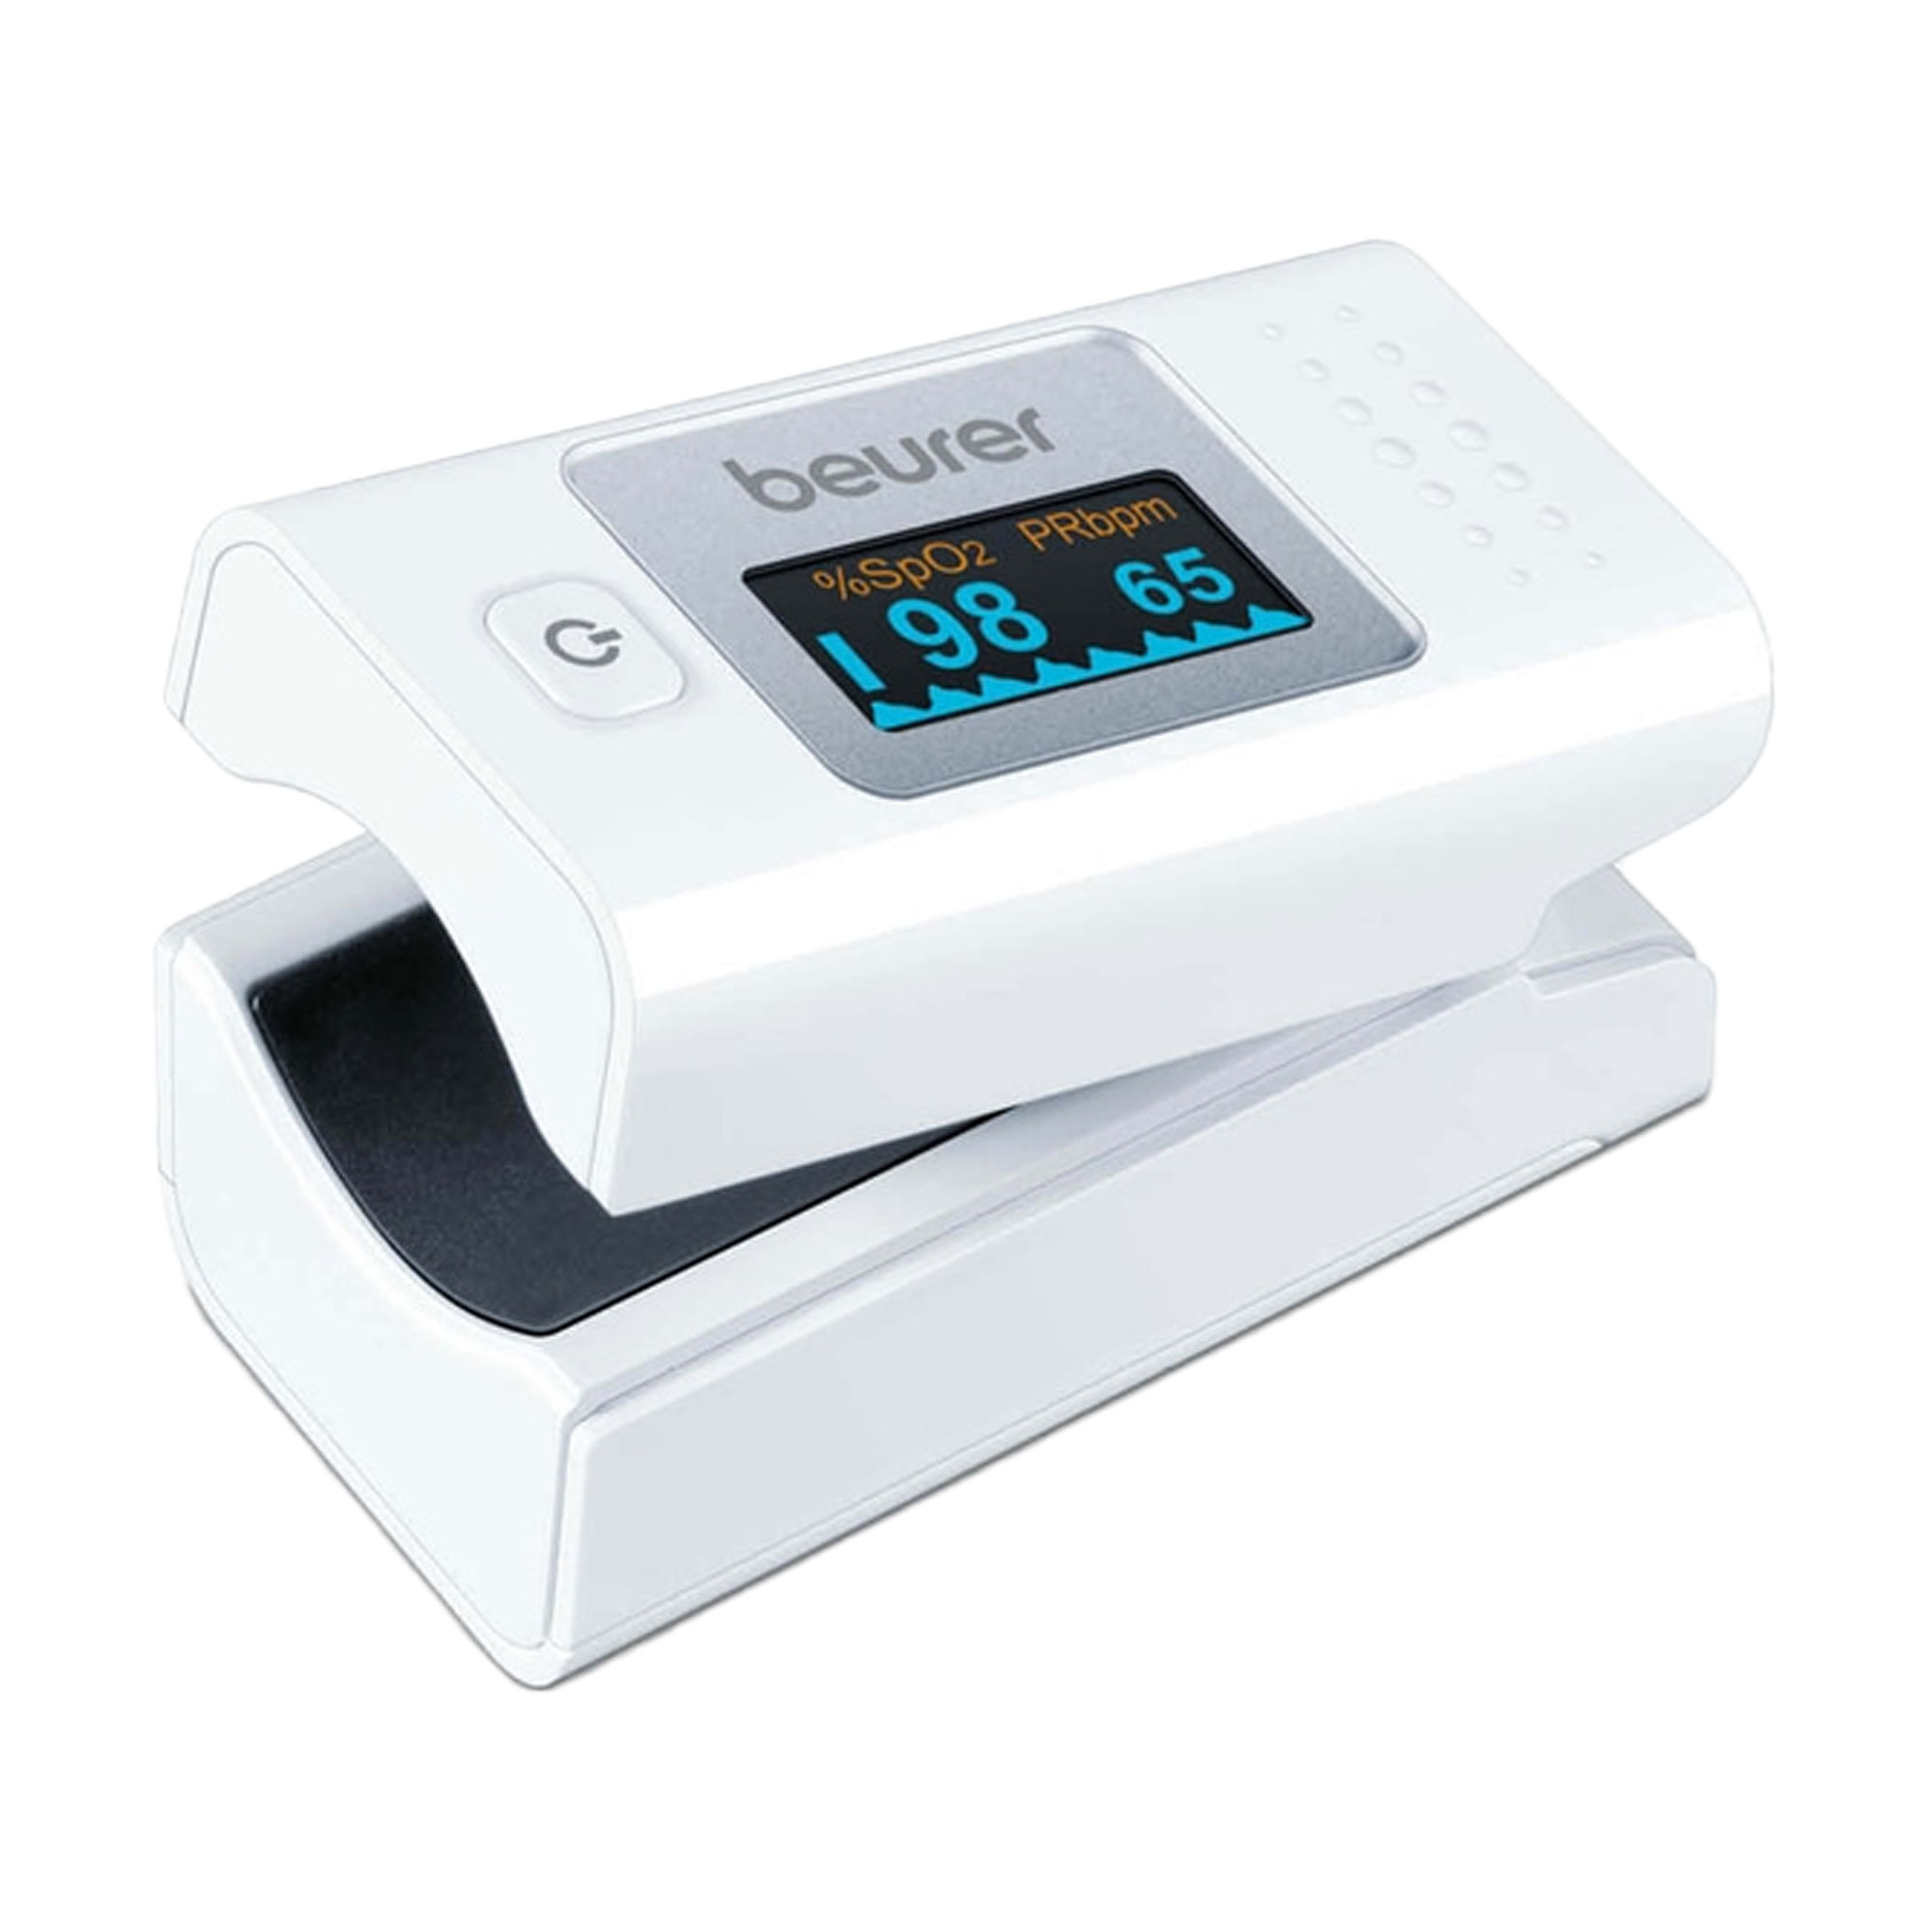 Handliches Pulsoximeter zur Messung der Sauerstoffsättigung und Herzfrequenz.